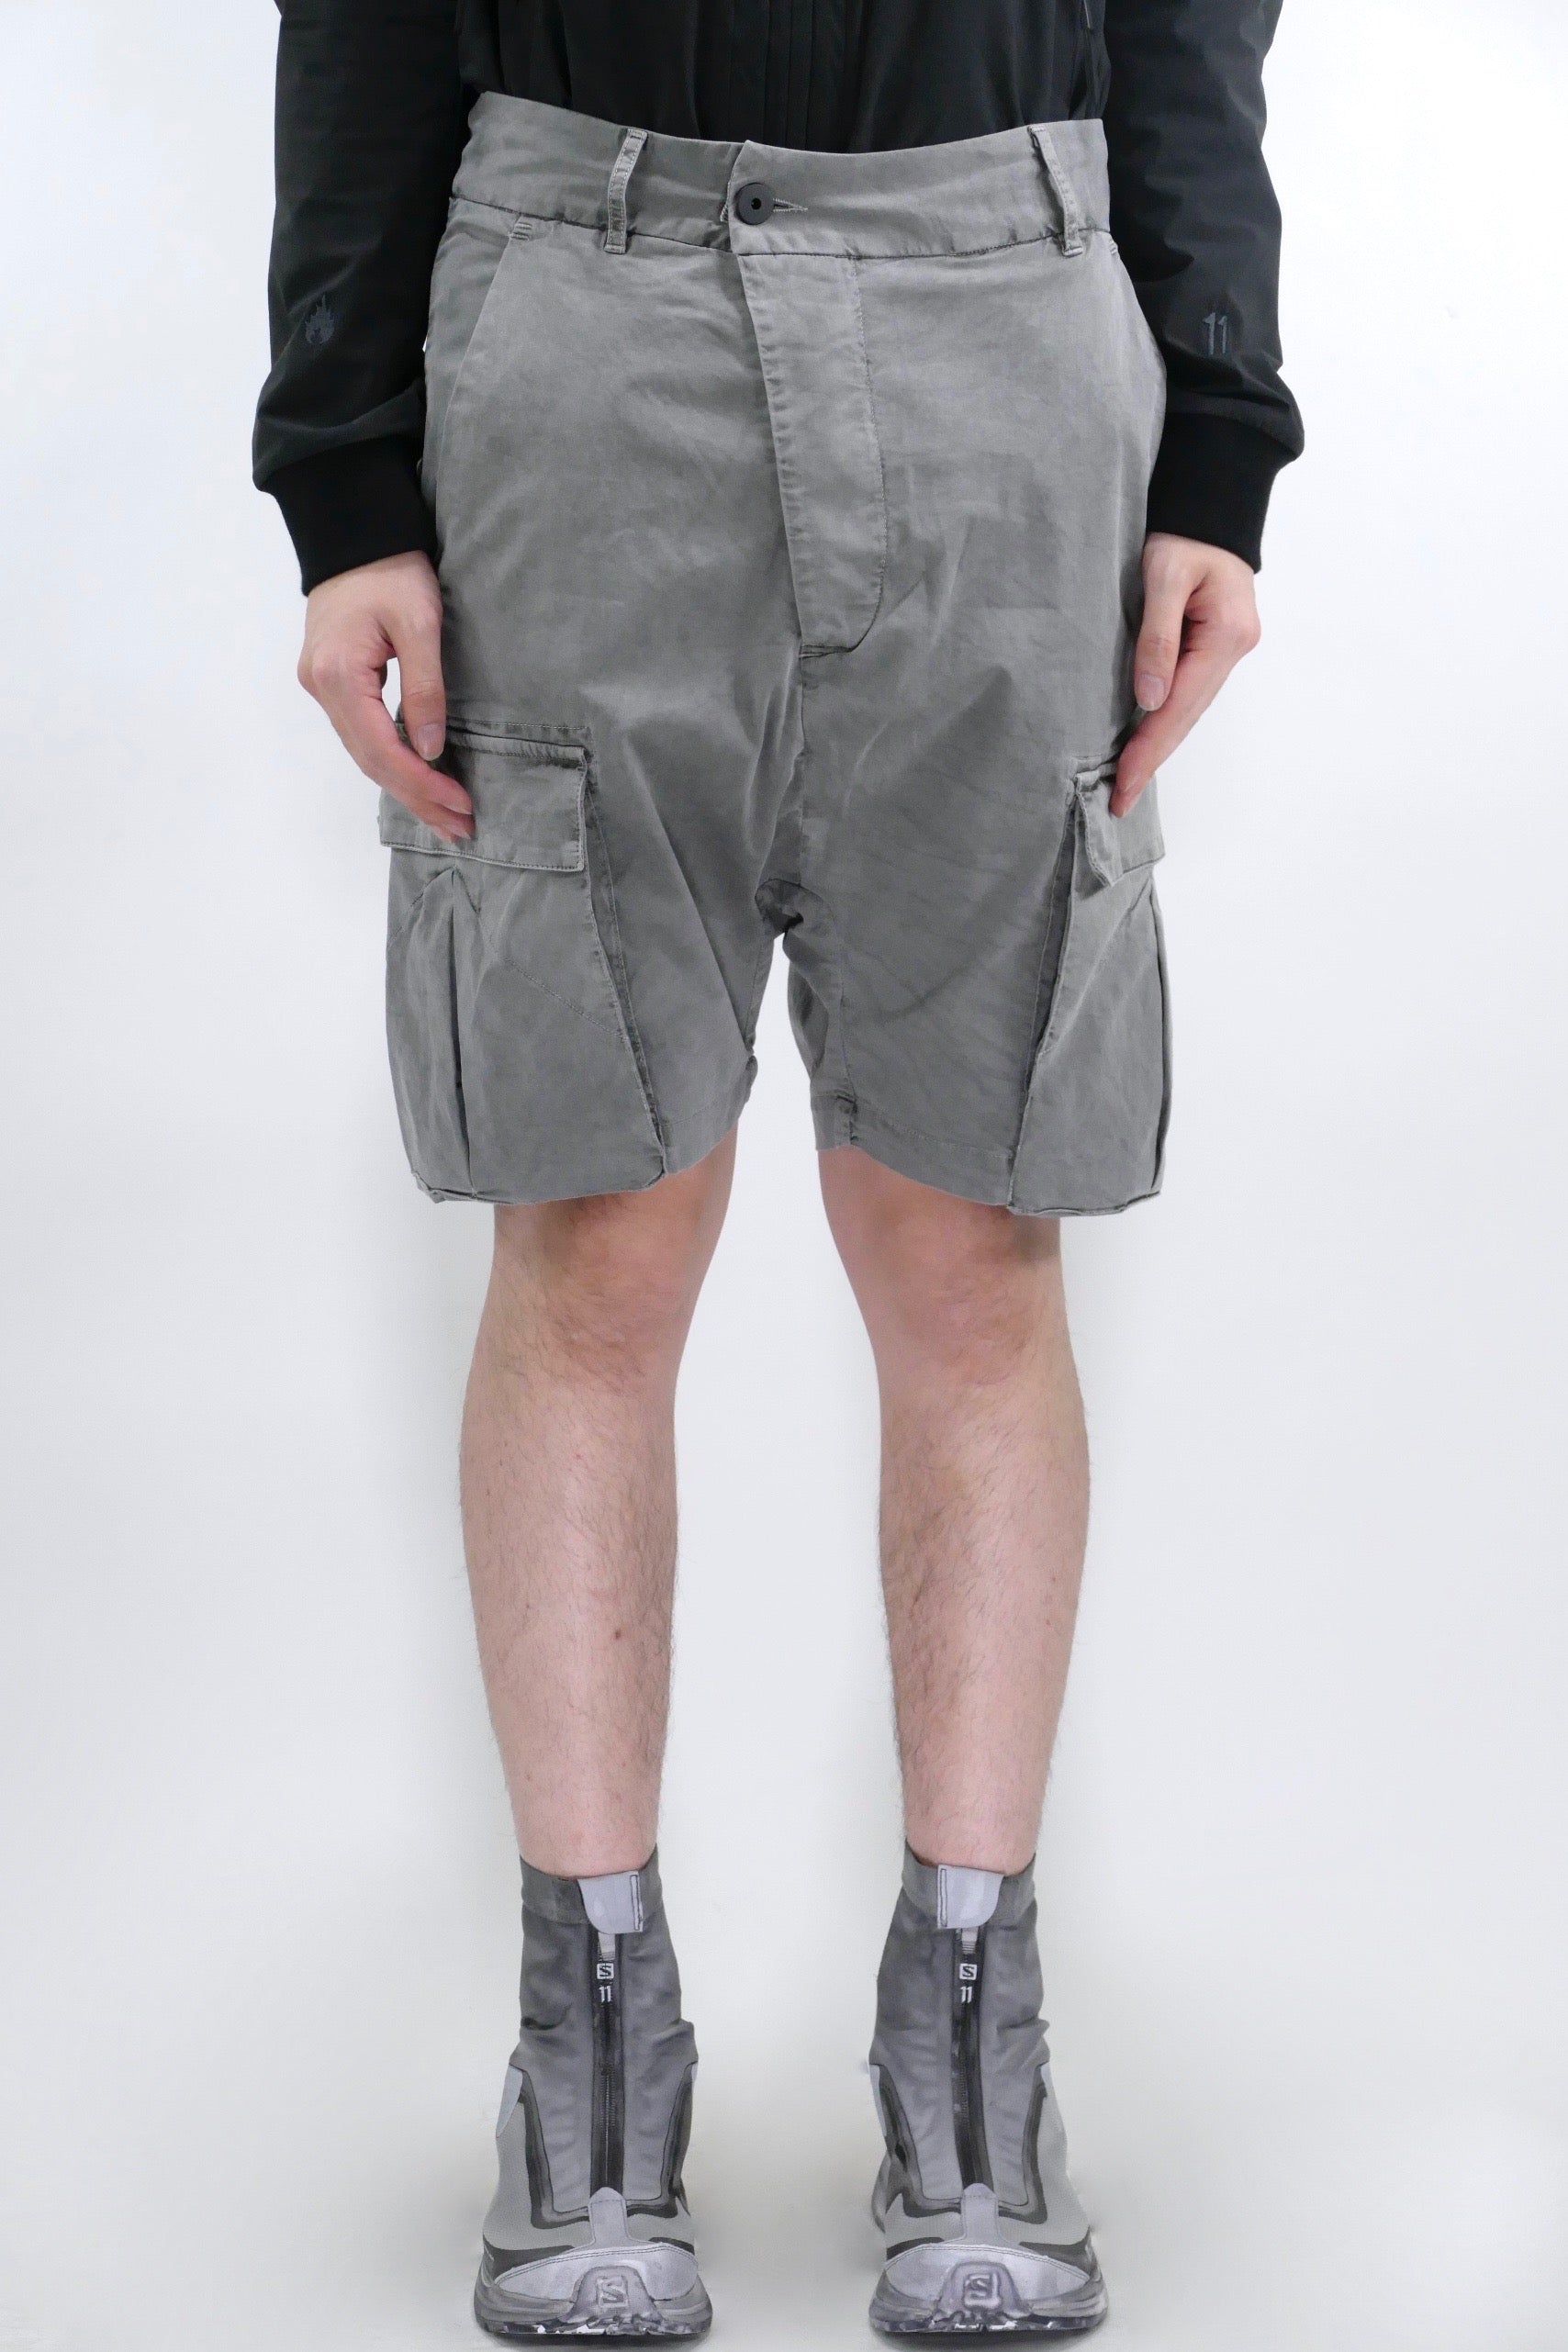 Bloch Glacier Printed Shorts - GB209C